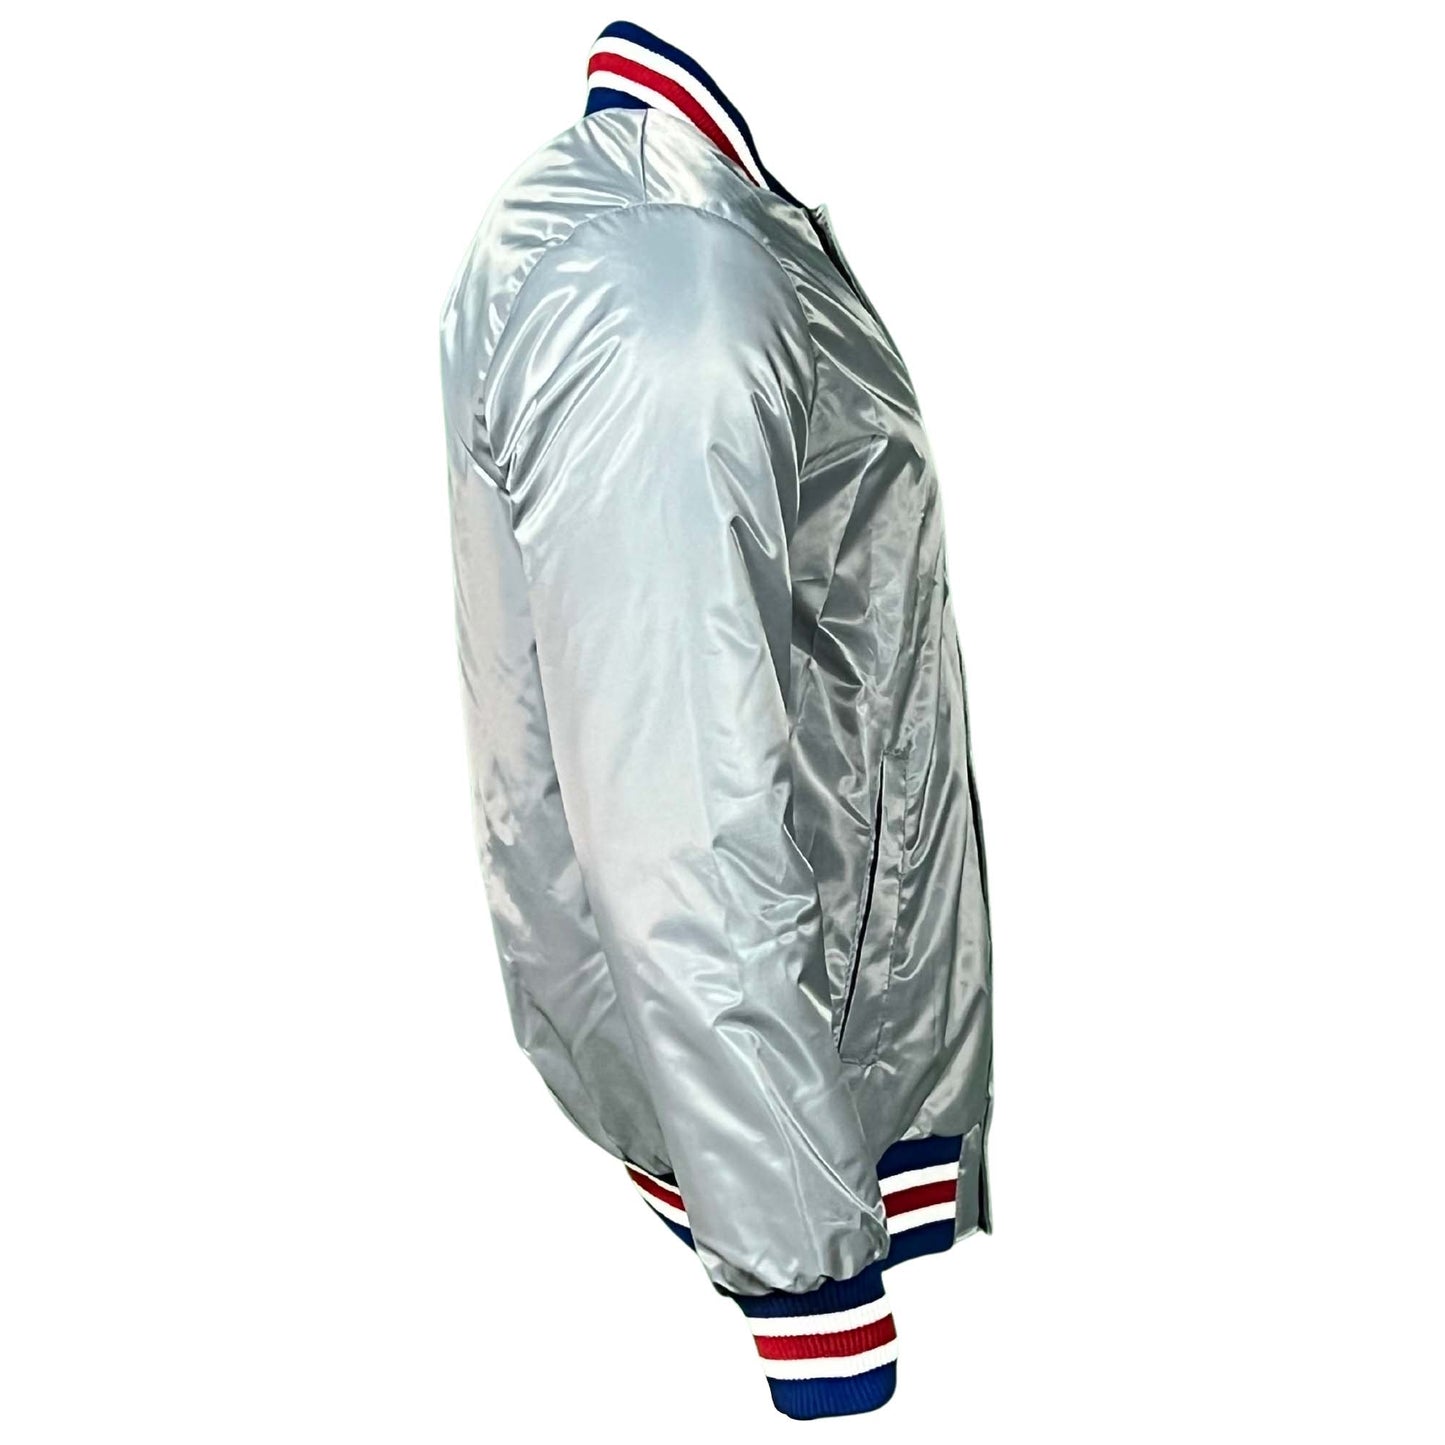 Chicago Cubs Grey Vintage Starter Jacket